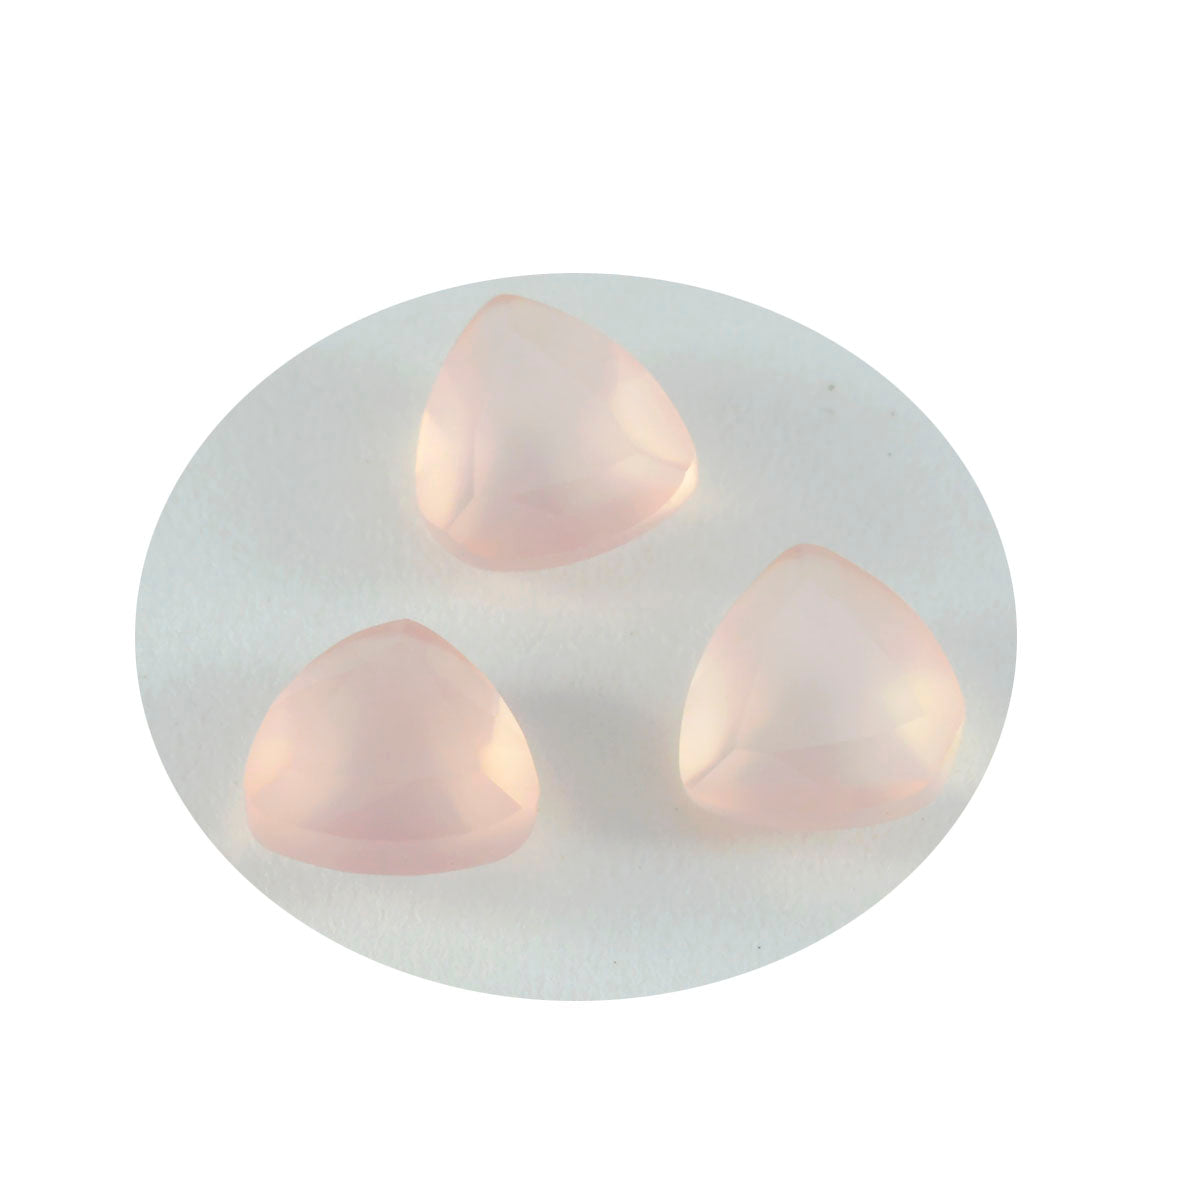 Riyogems 1pc quartz rose à facettes 13x13mm forme trillion pierre précieuse de belle qualité